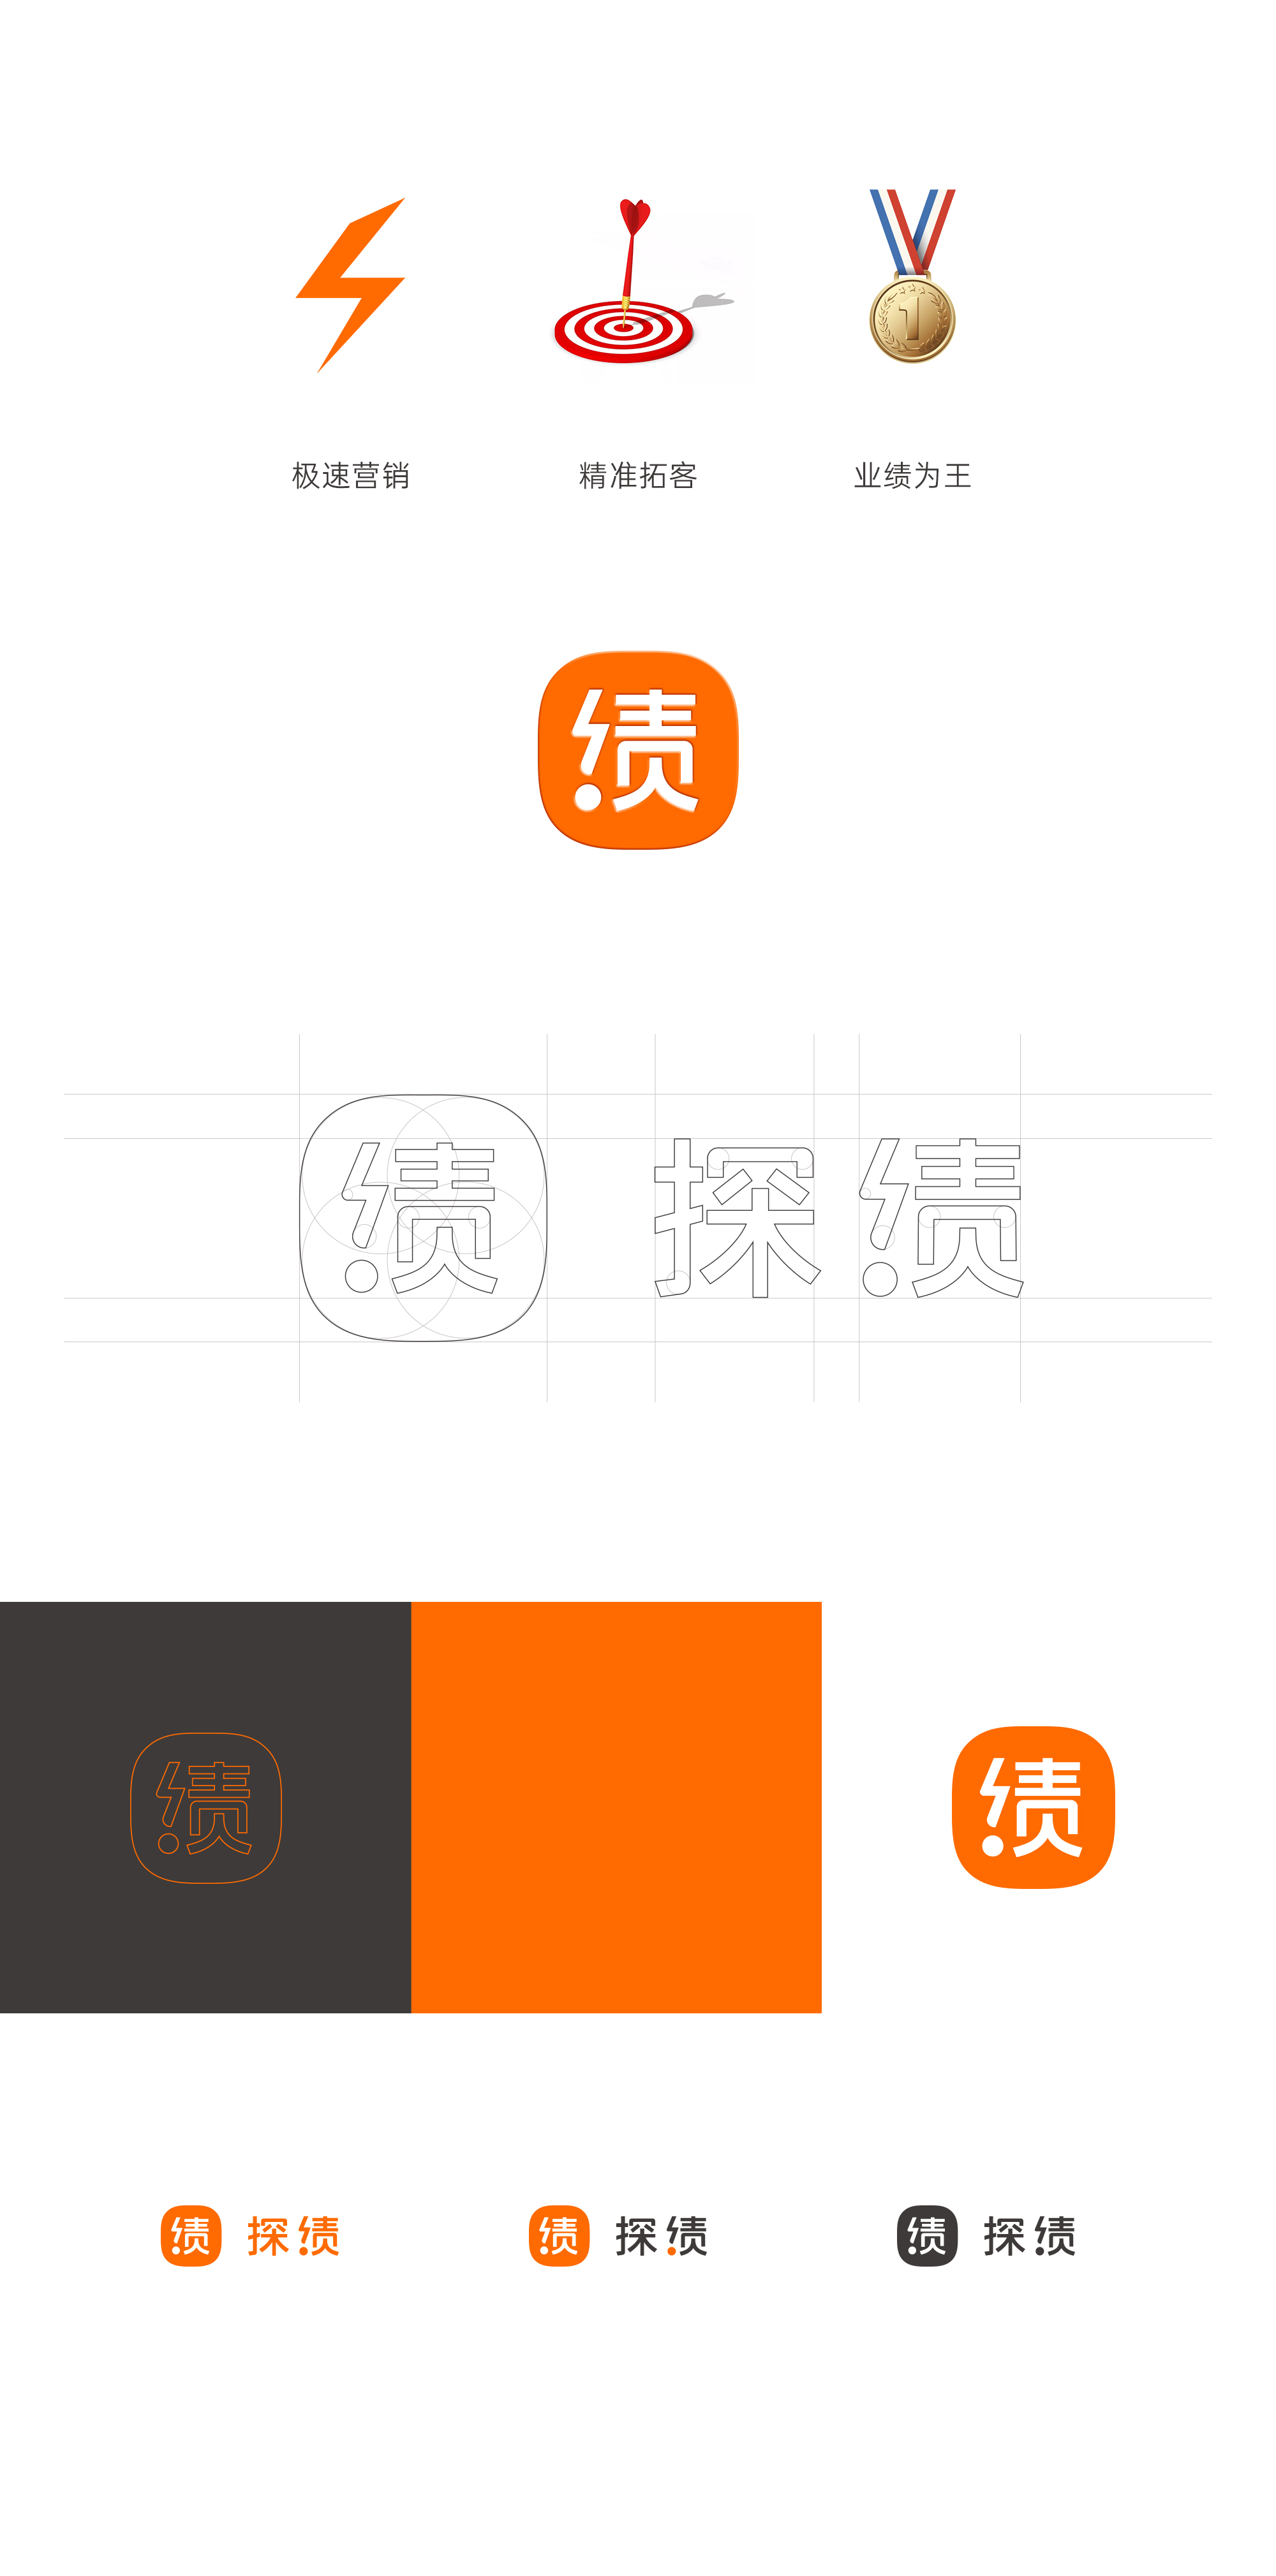 探绩IT营销软件-VIS-logo设计_03.jpg